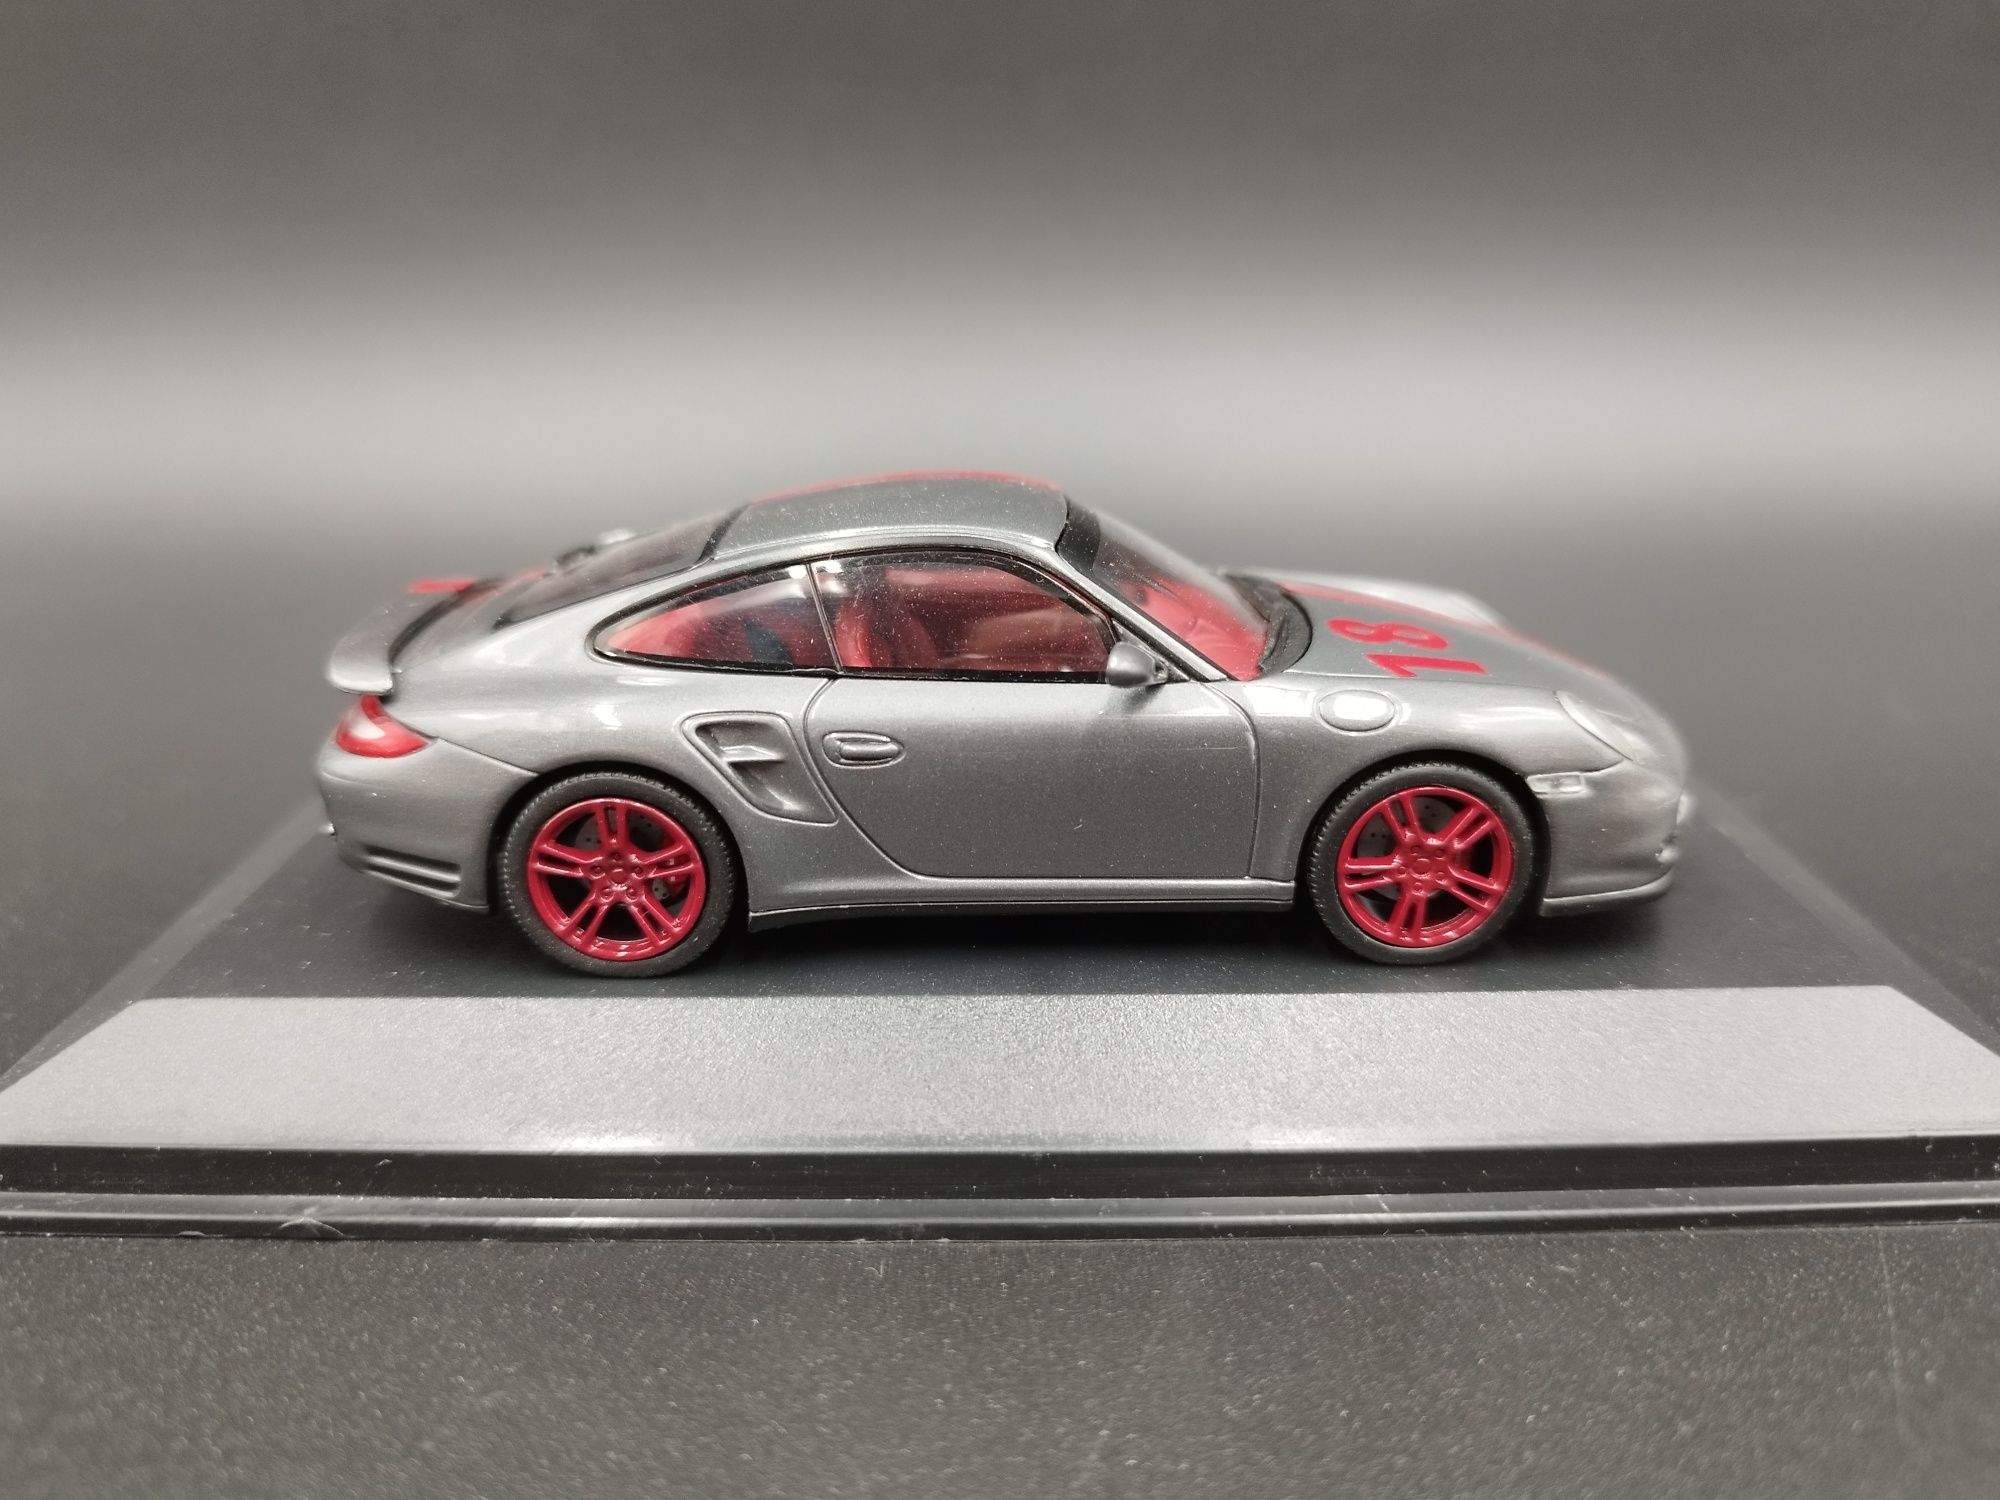 1:43 Minichamps Porsche 911(997) Turbo S limit 67/99 sztuk